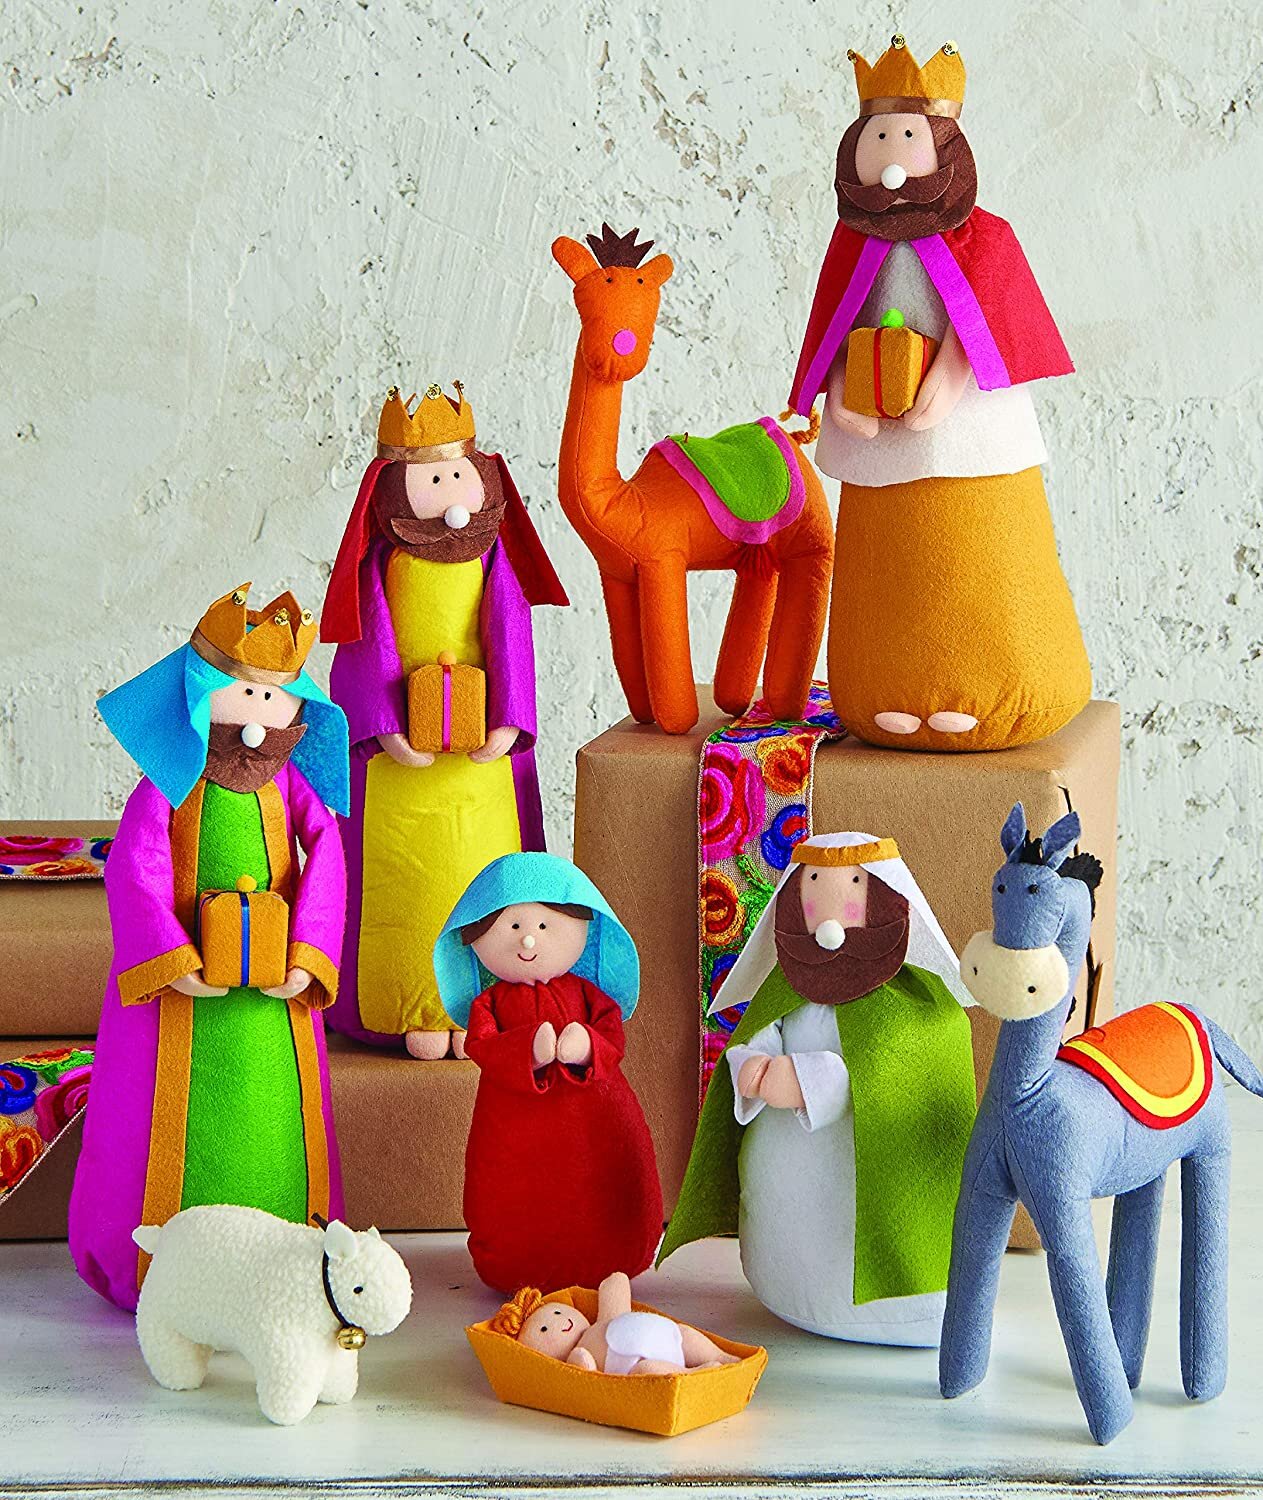 Felt Nativity Set - Large